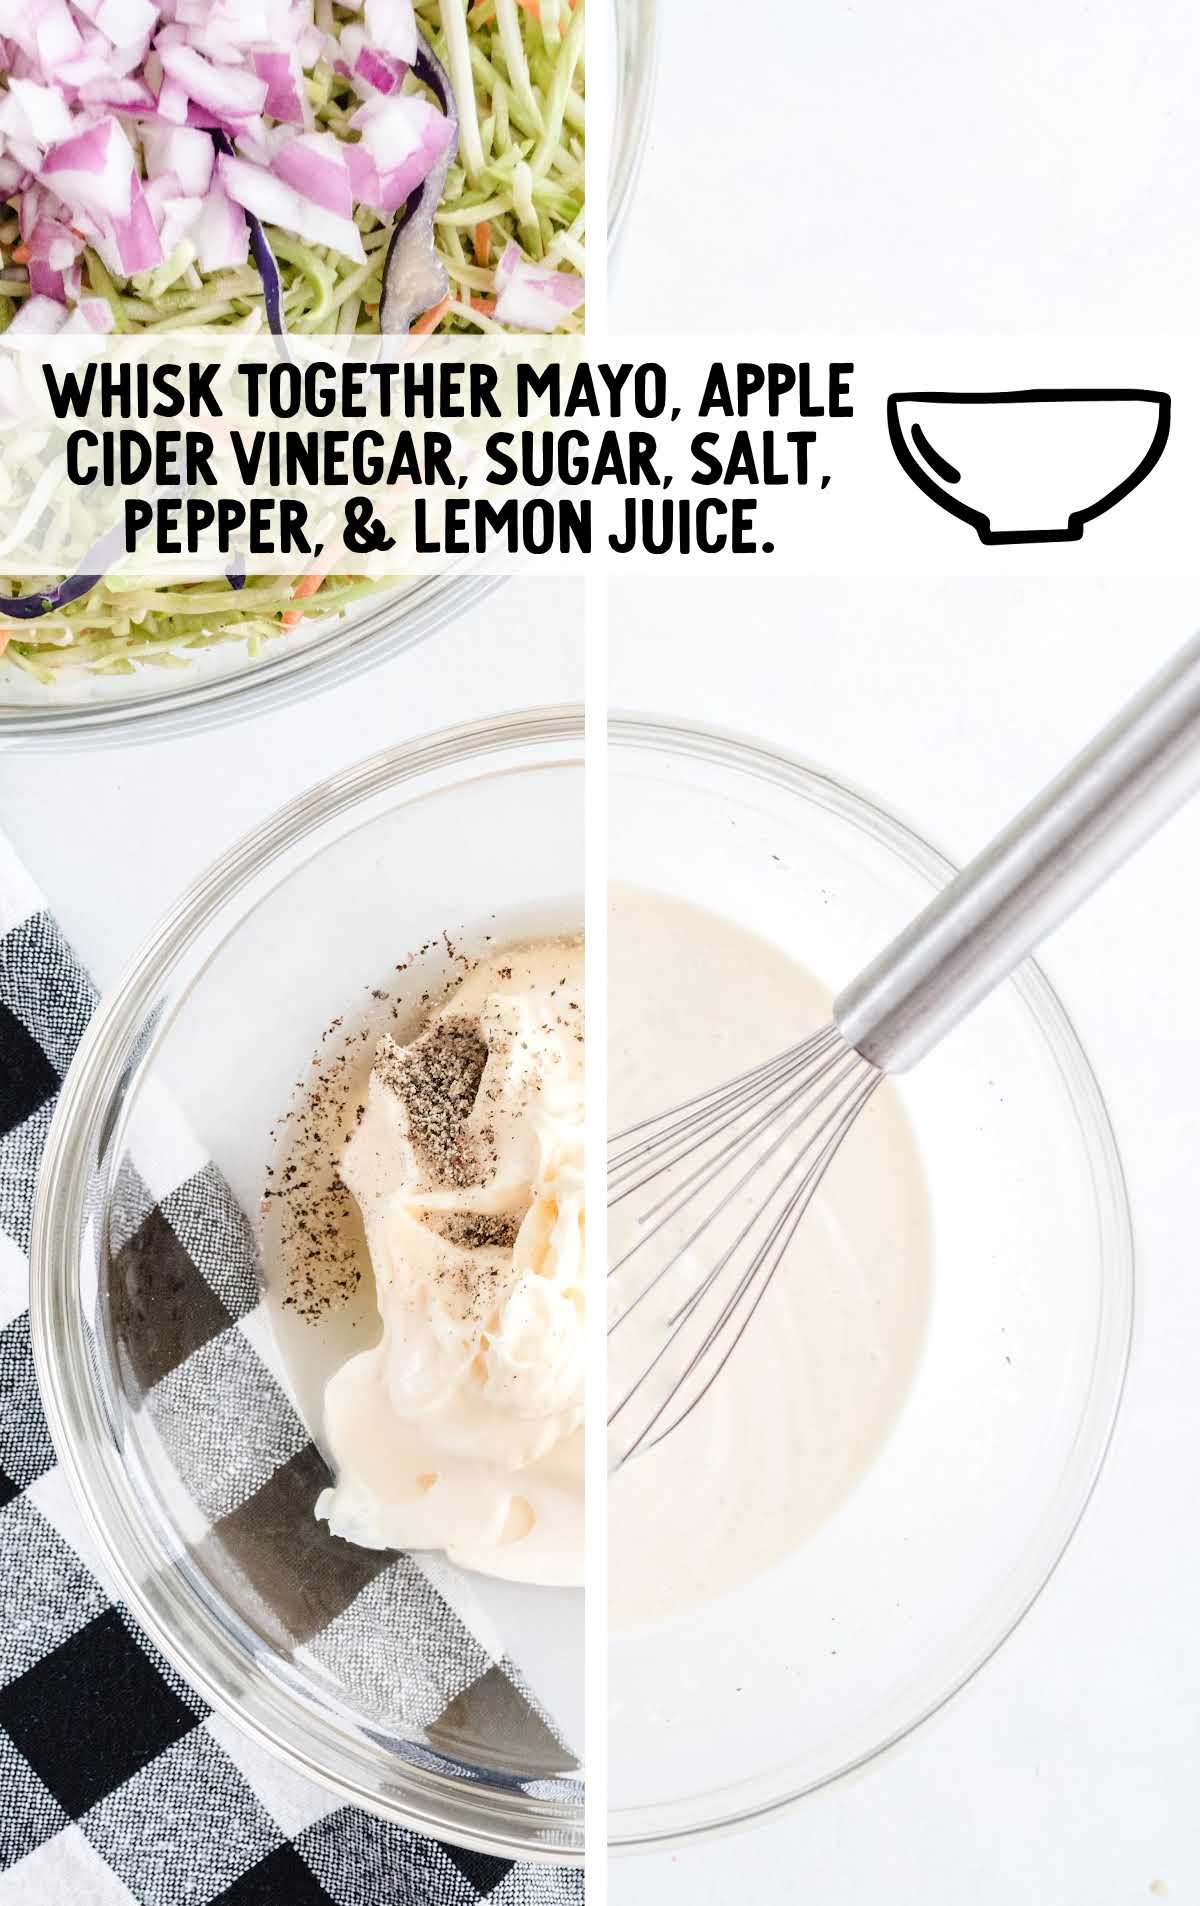 mayonnaise, apple cider vinegar, sugar, salt, pepper, and lemon juice whisked together